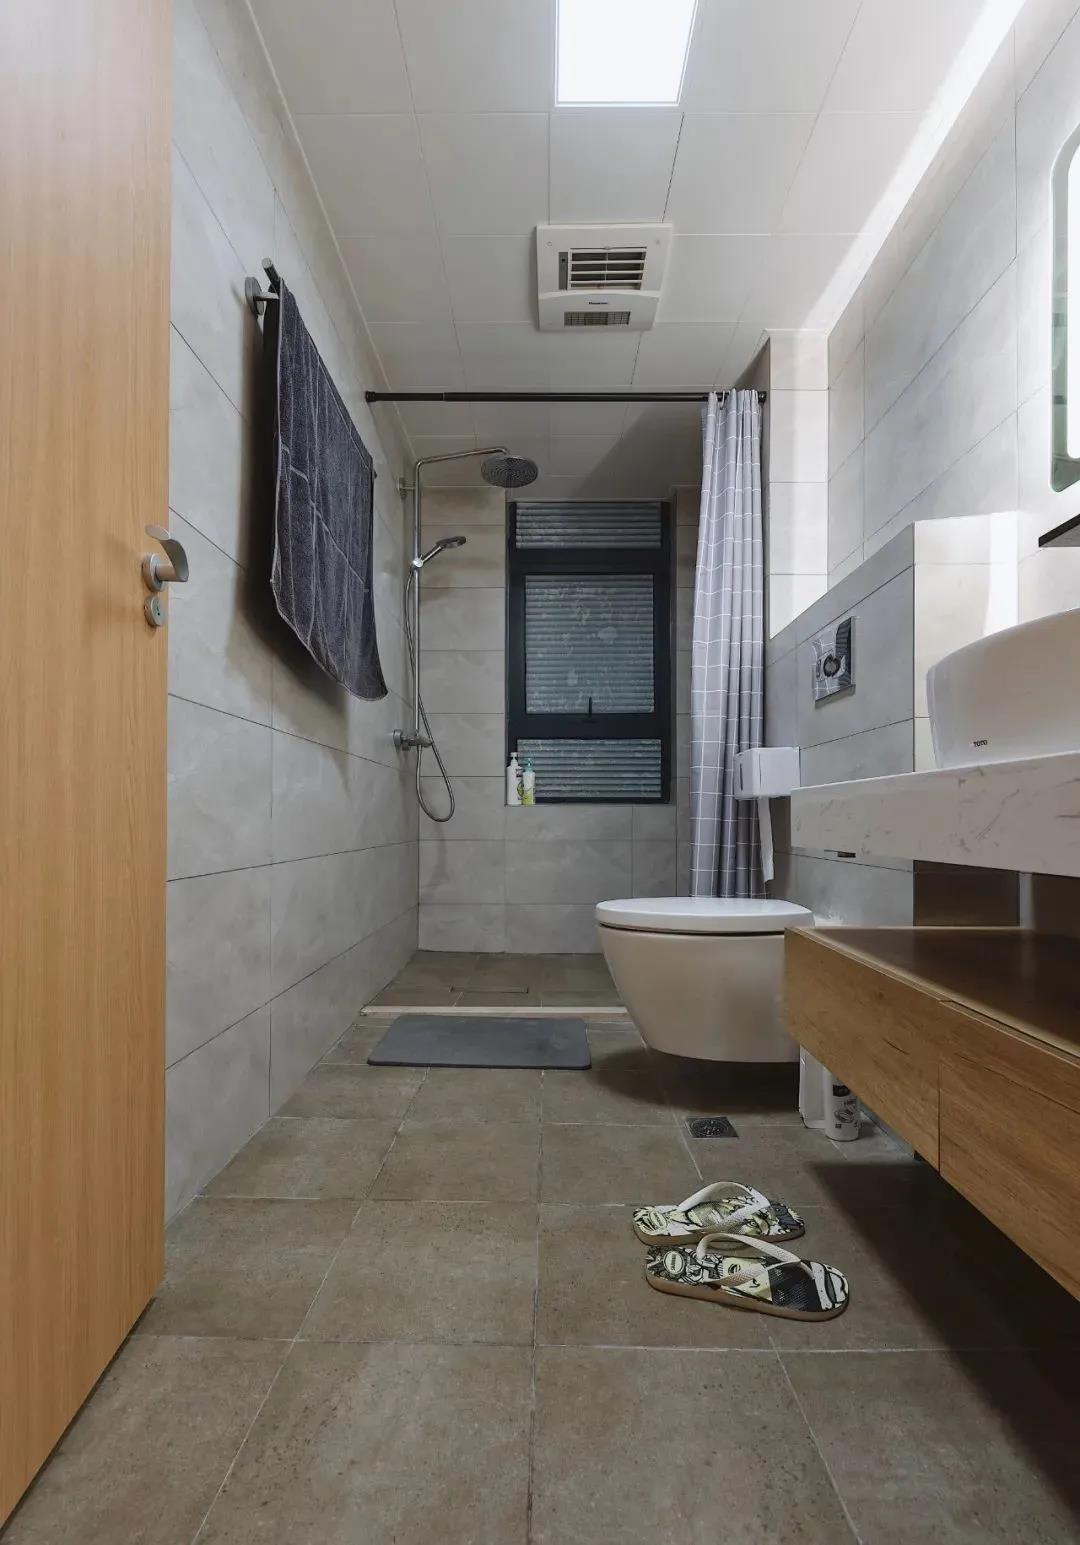 卫浴空间纵深感较强，局部使用浴帘作干湿分离，动线设计的很完整。